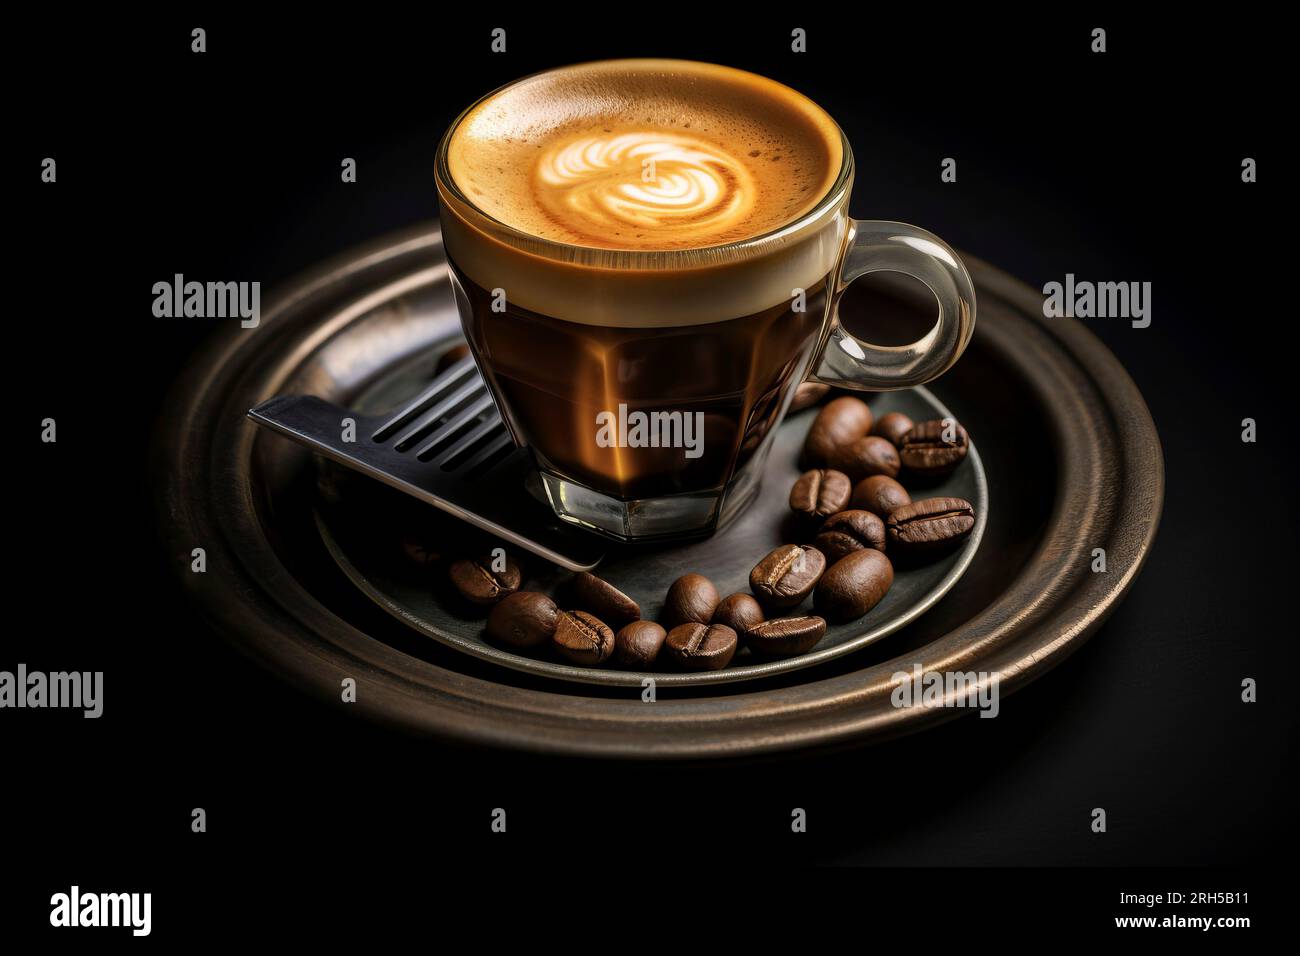 Un espresso magnifiquement préparé, servi dans une tasse traditionnelle,  capturant l'essence de la culture du café italien Photo Stock - Alamy